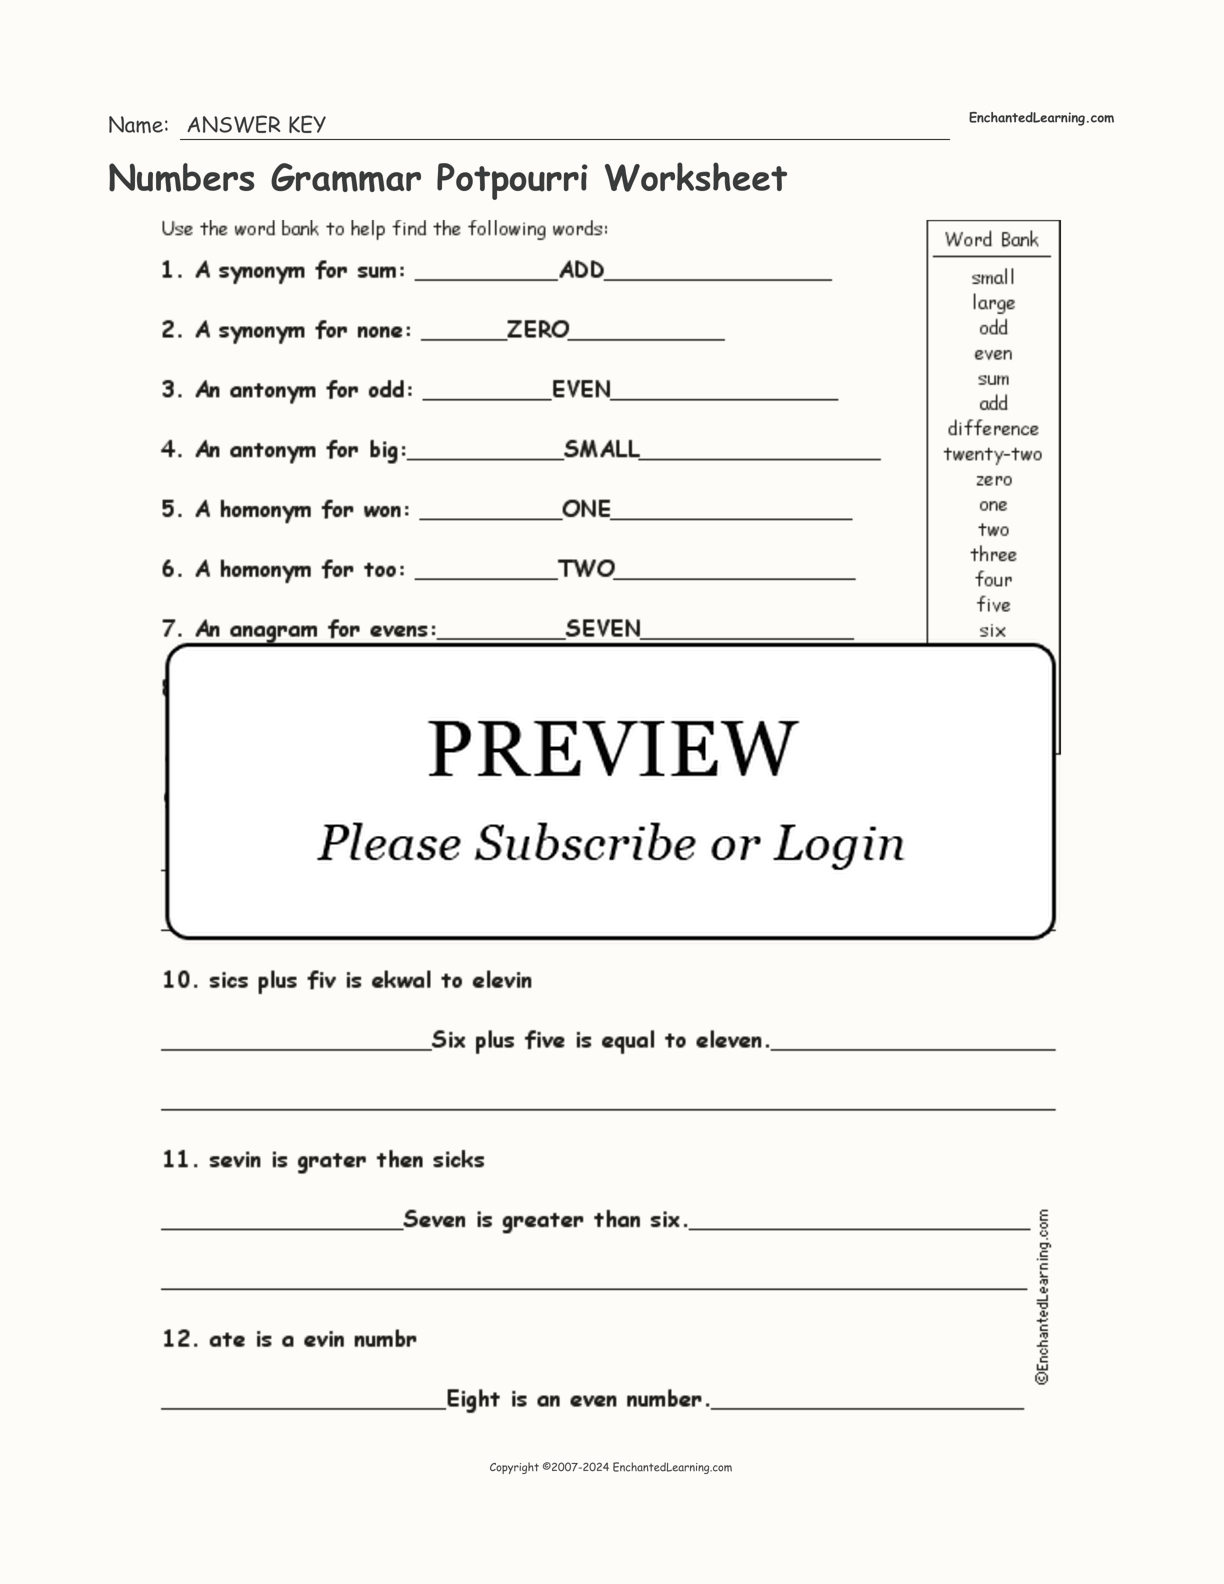 Numbers Grammar Potpourri Worksheet interactive worksheet page 2